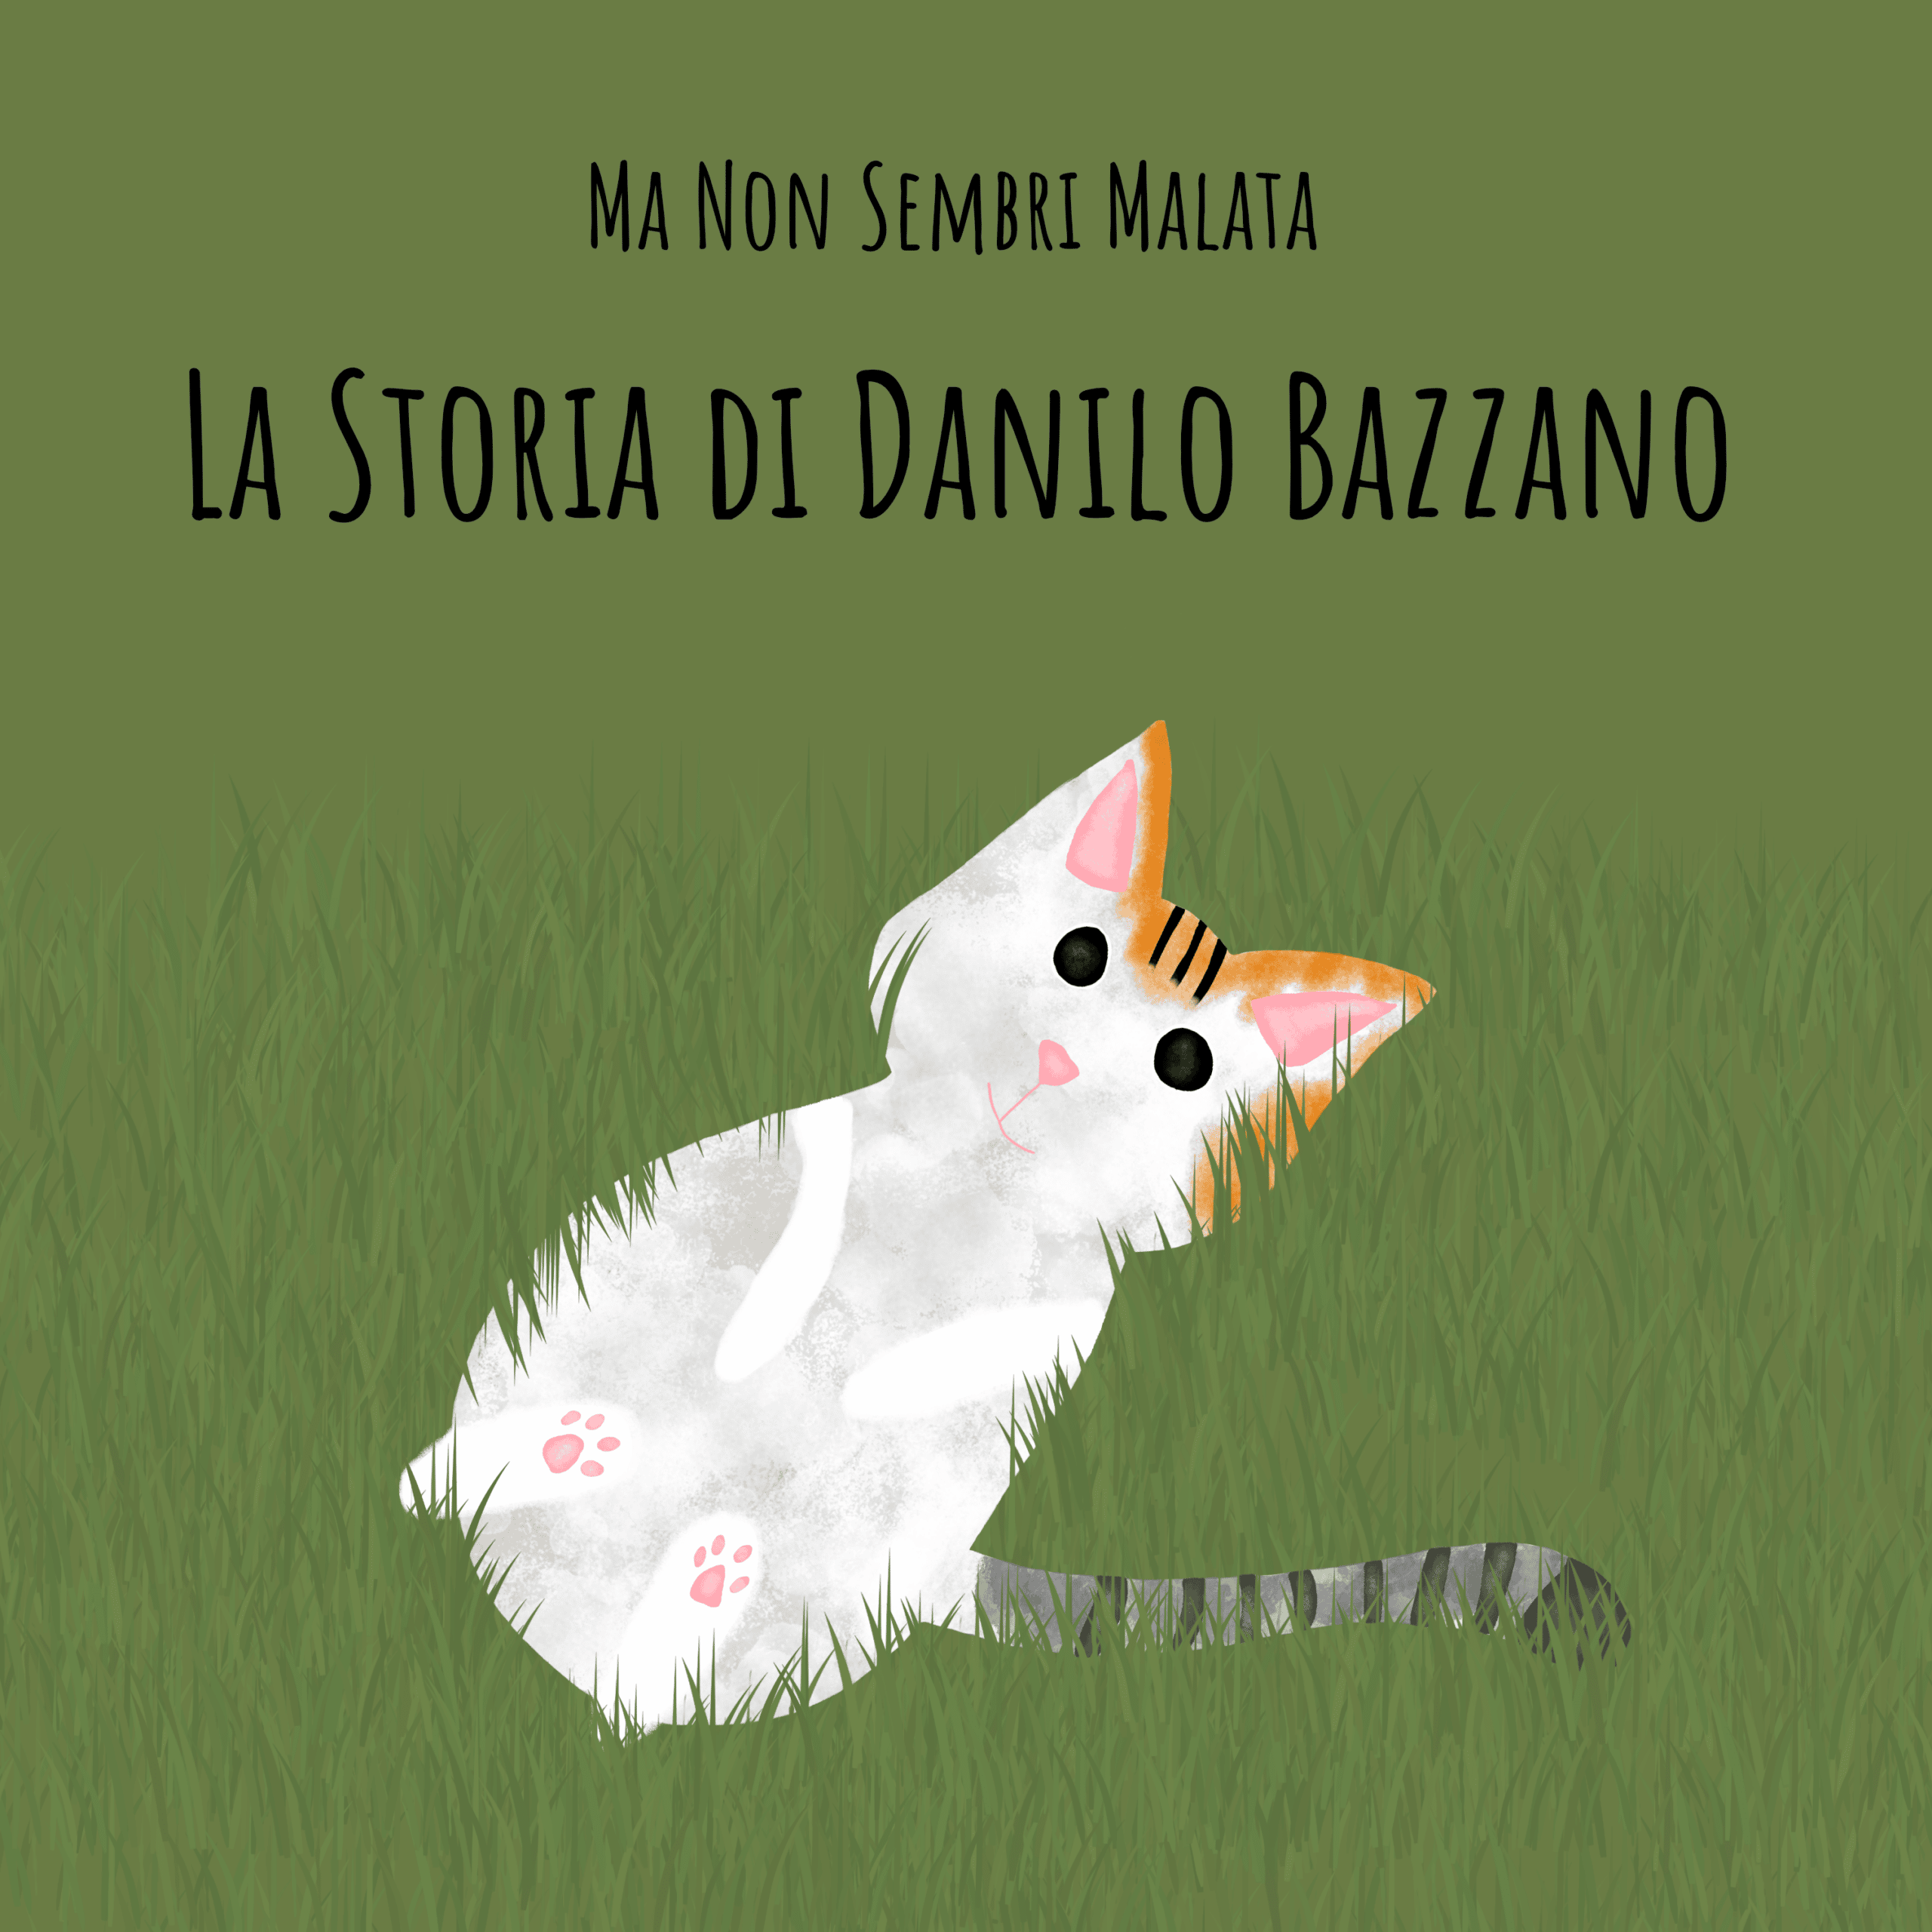 La storia di Danilo Bazzano